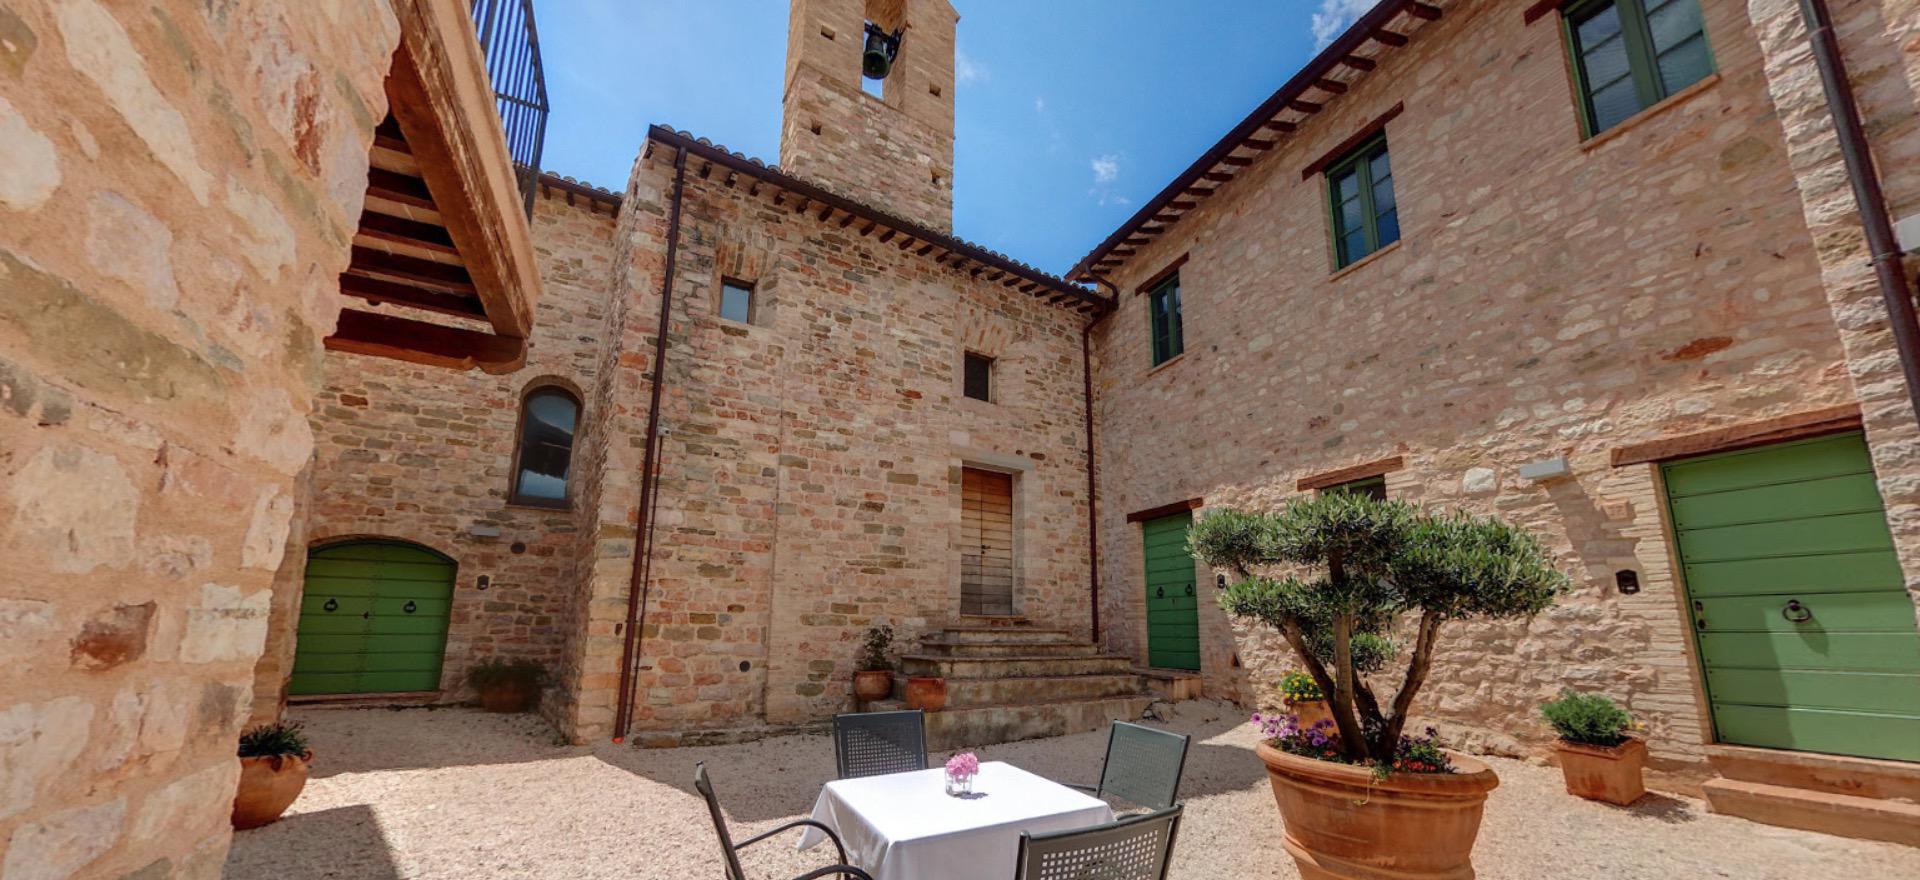 Agriturismo Umbria Resort per famiglie nel cuore dell'Umbria